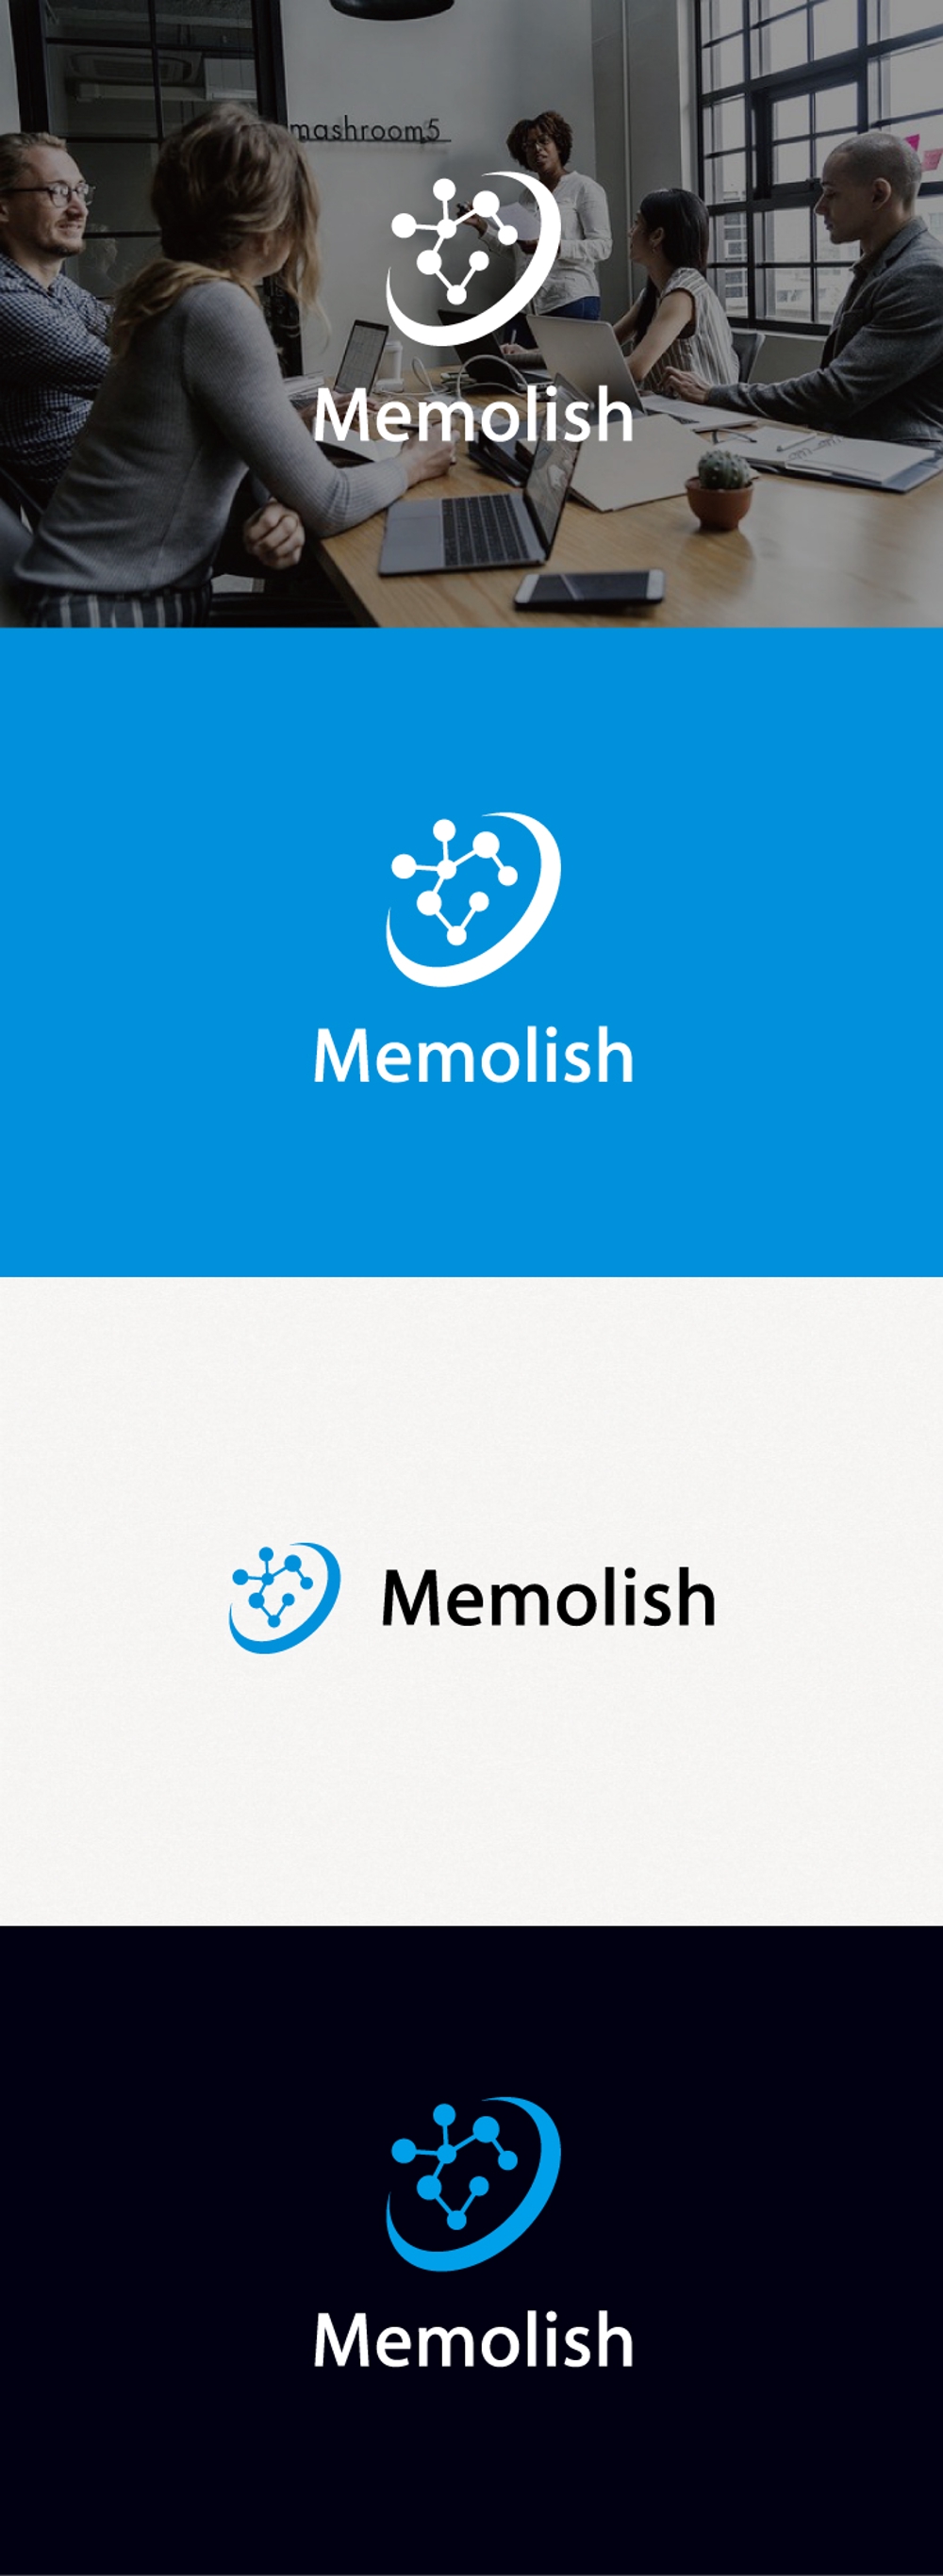 「メモリッシュ英会話スクール」のロゴ作成-記憶術と融合した新しい英会話スクールのロゴ